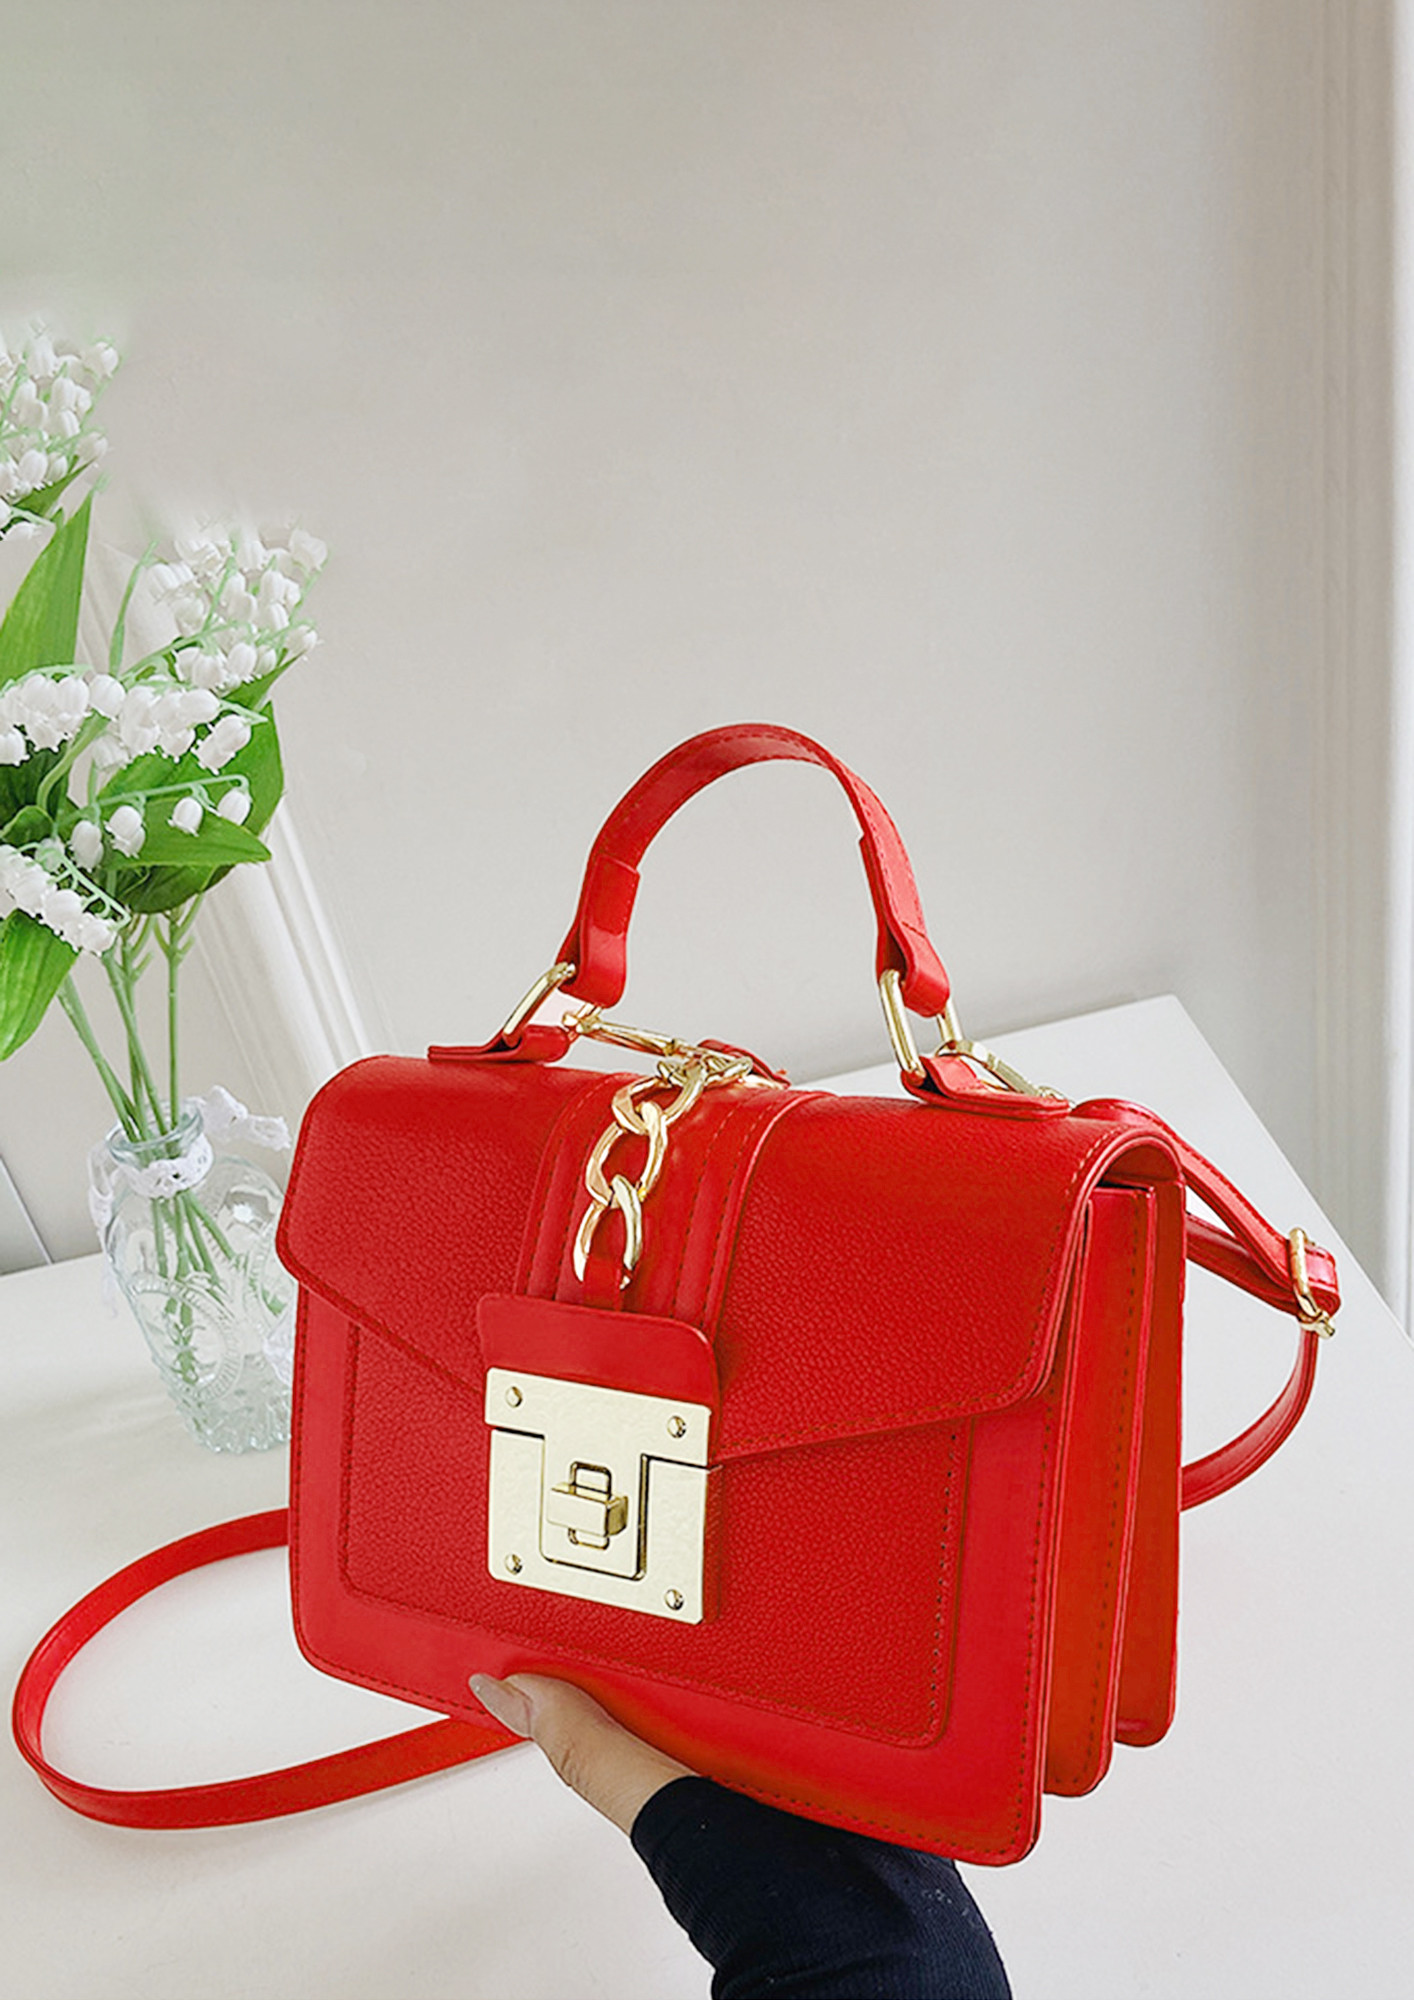 Aldo red bag | Red bags, White leather handbags, Aldo bags